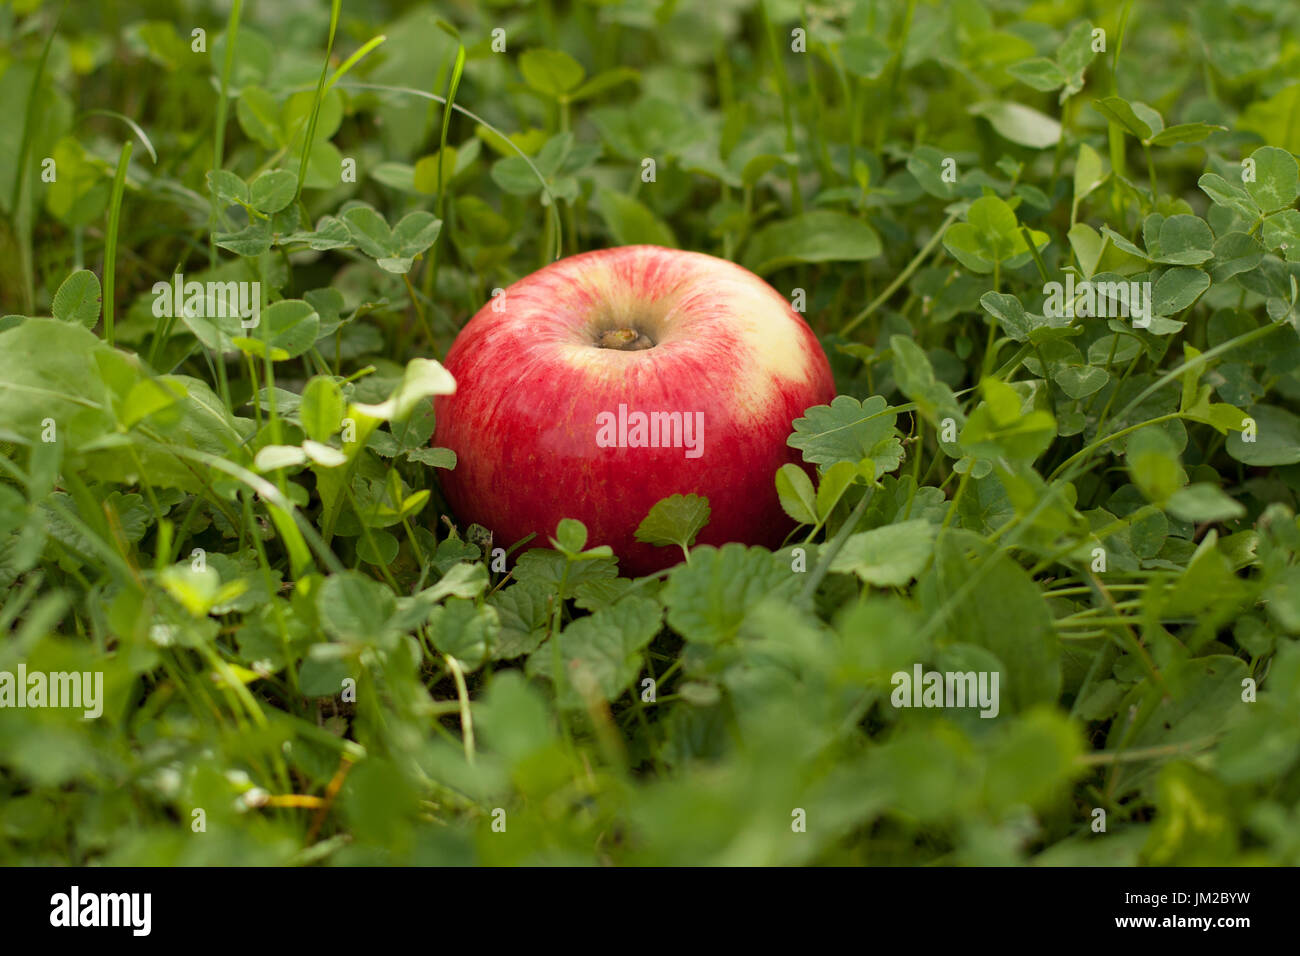 Eine frische reifen roten Apfel liegt im grünen Rasen Hintergrund im Herbst Garten hautnah. Frische Bio-Apfel. Gesunde Lebensweise und Food-Konzept. Stockfoto